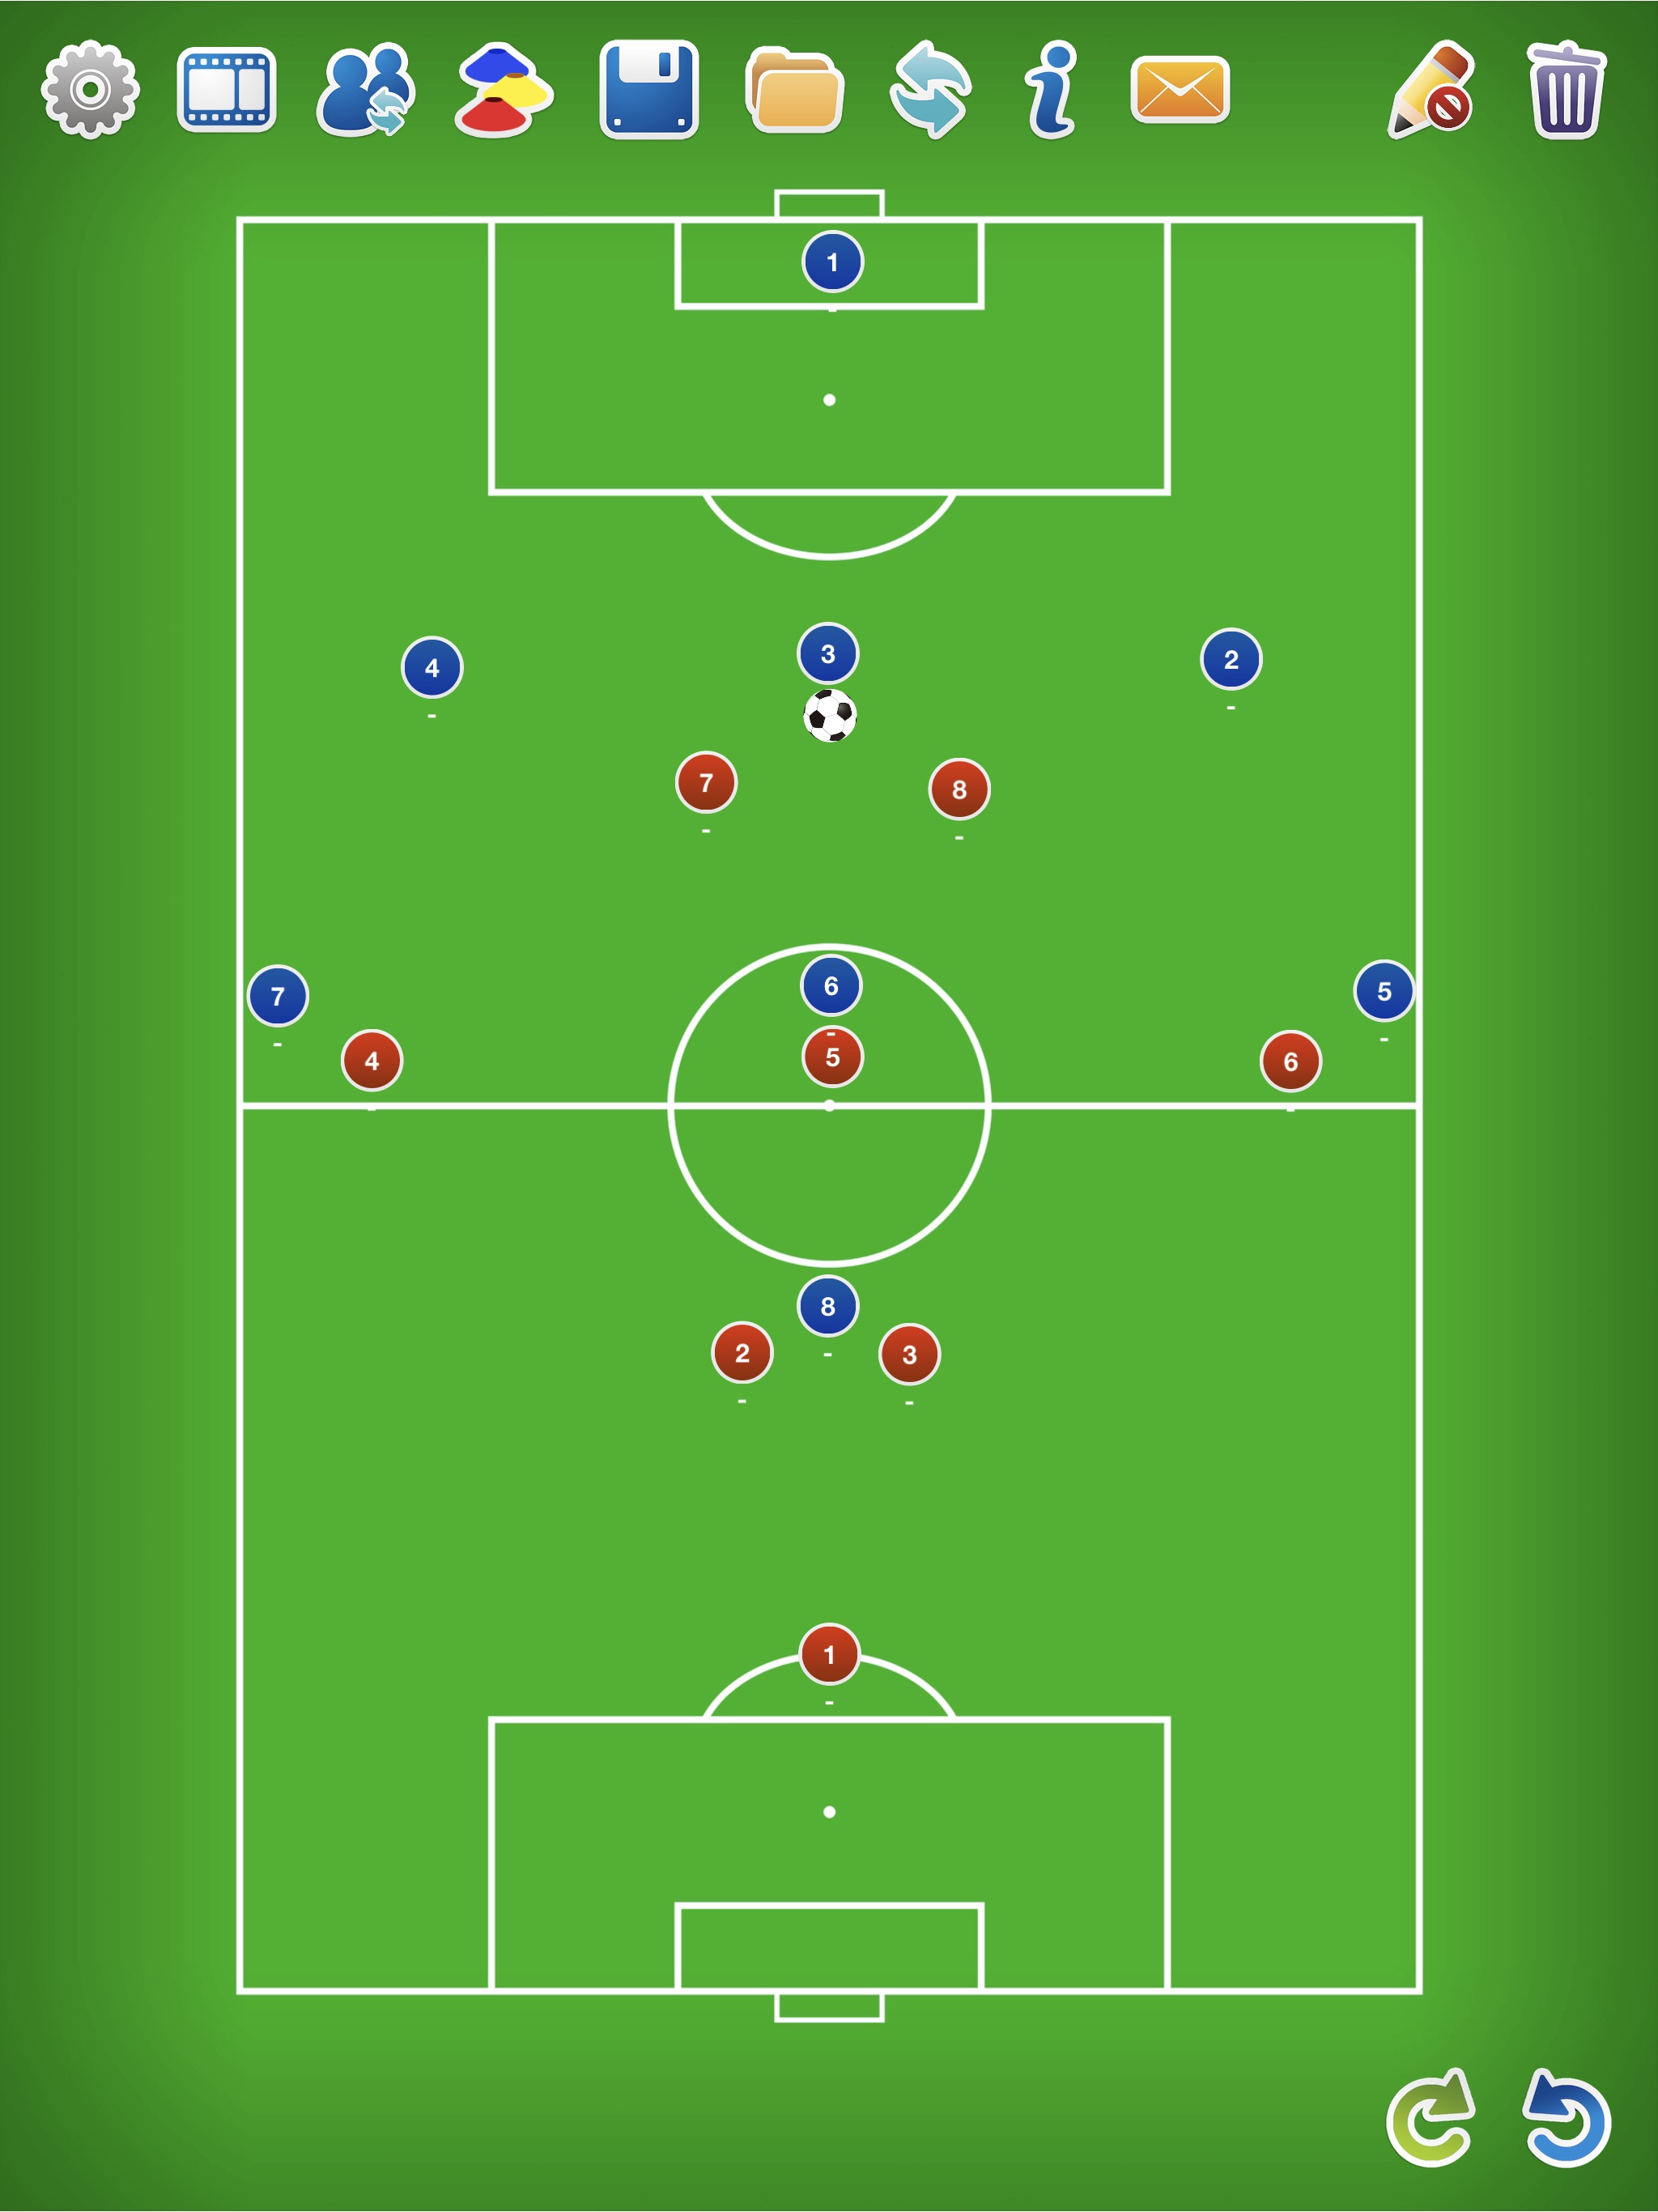 サッカー教室 3 3 1に対する2 3 2でのフォワードの守備について Independiente Japan Hatoyama